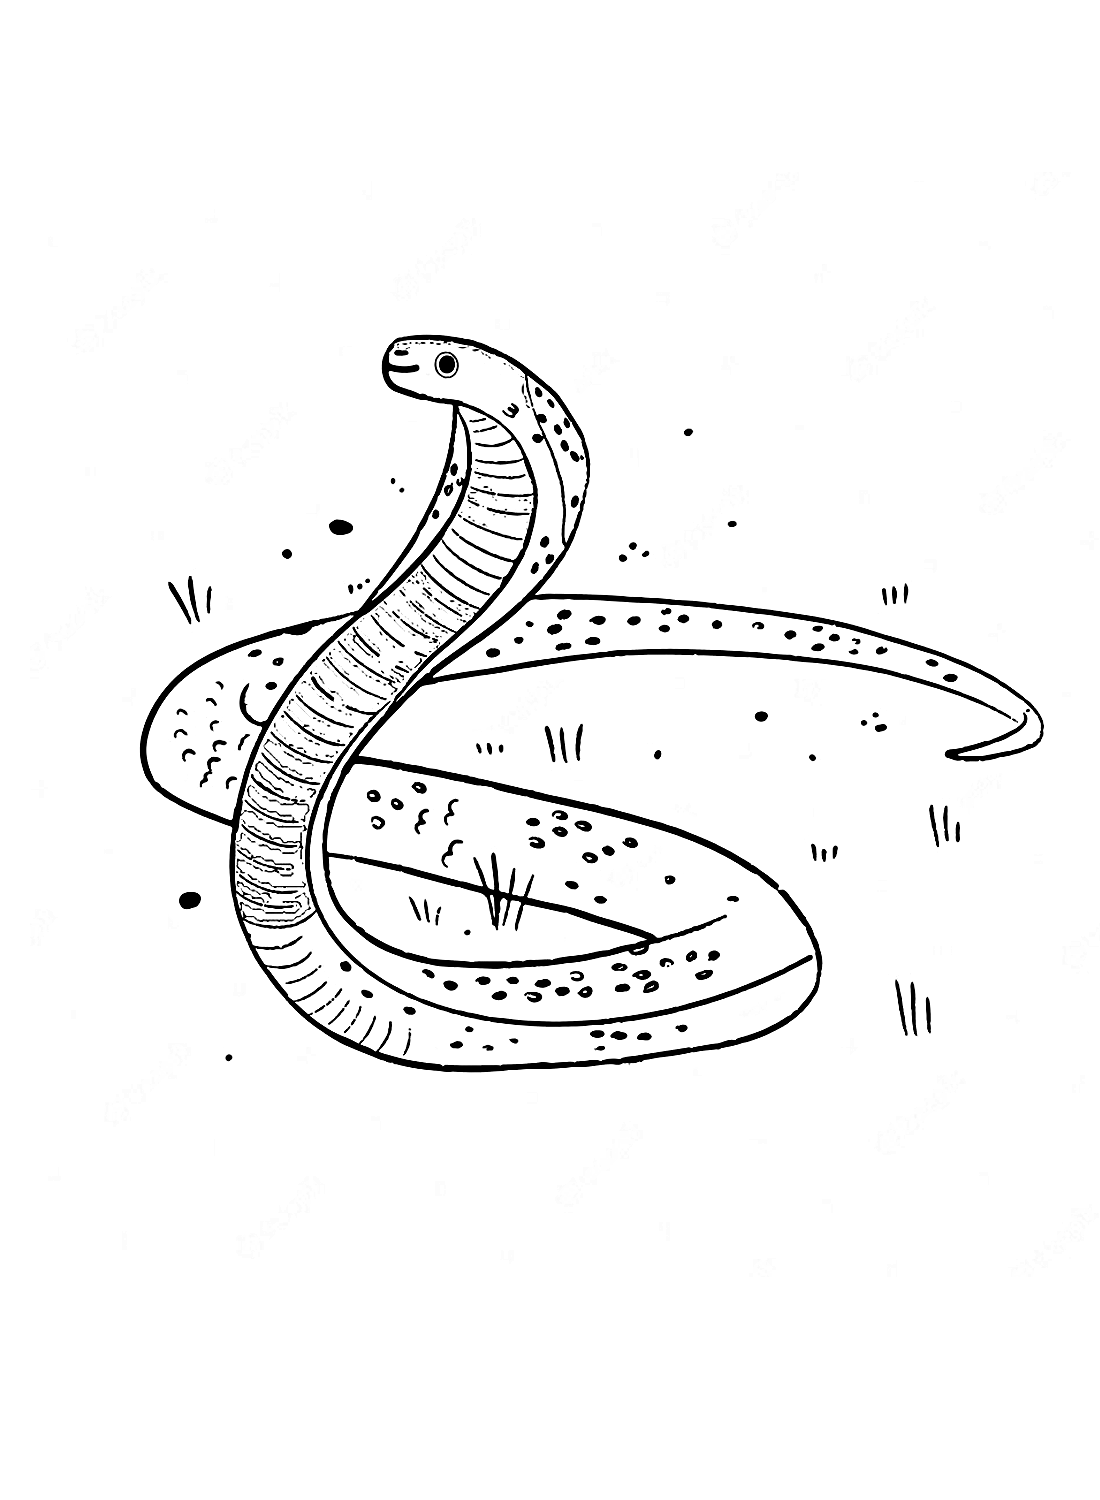 La cobra simple de Cobra